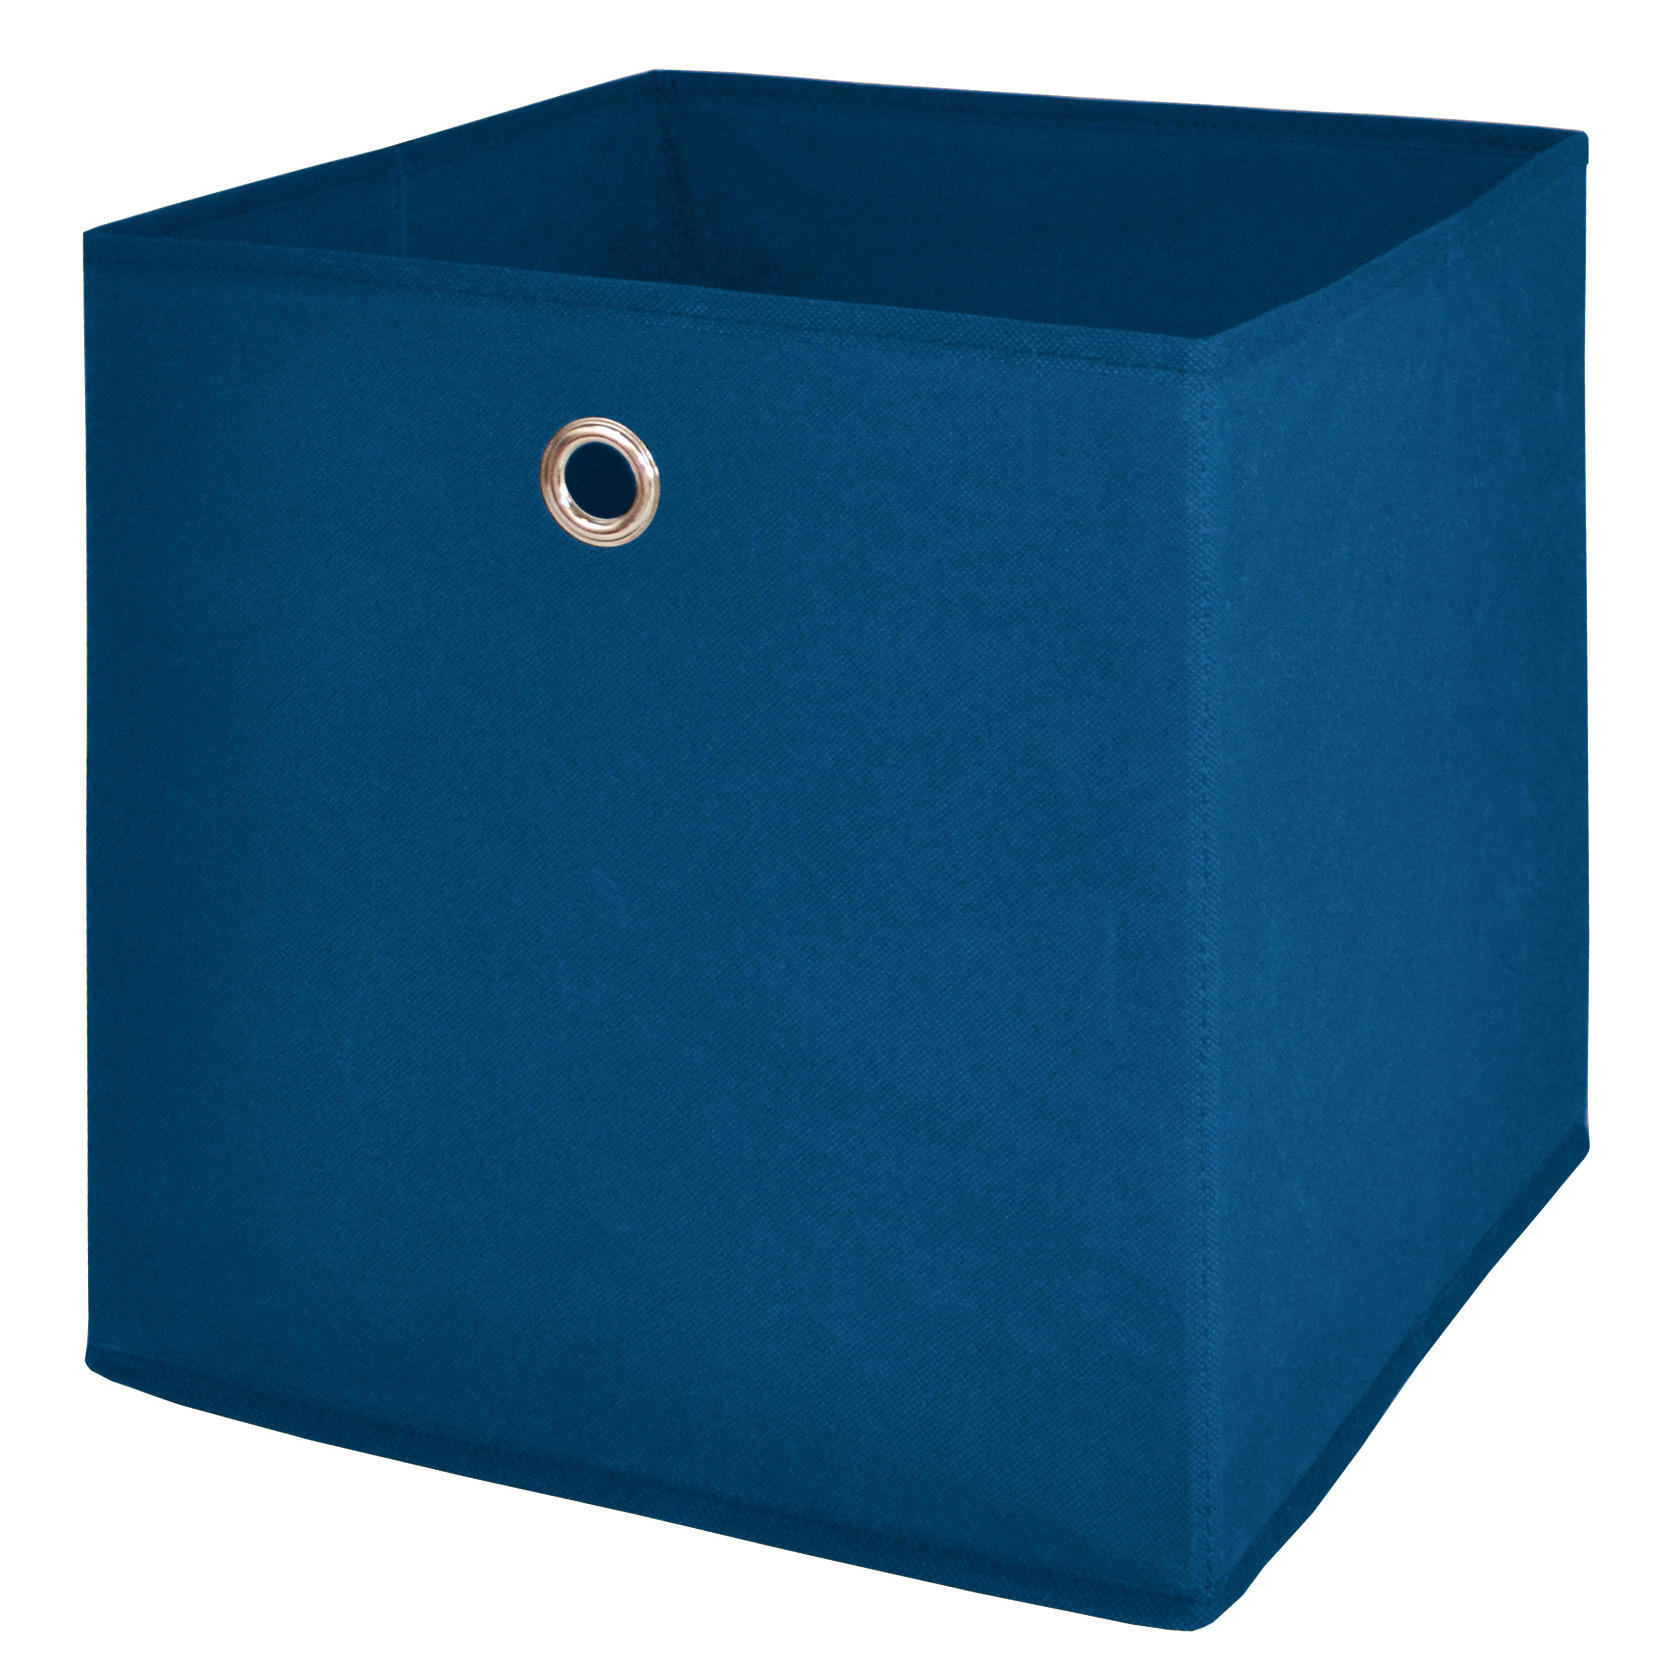 Stoffbox blau B/H/T: ca. 32x32x32 cm Stoffbox_1 - blau (32,00/32,00/32,00cm)